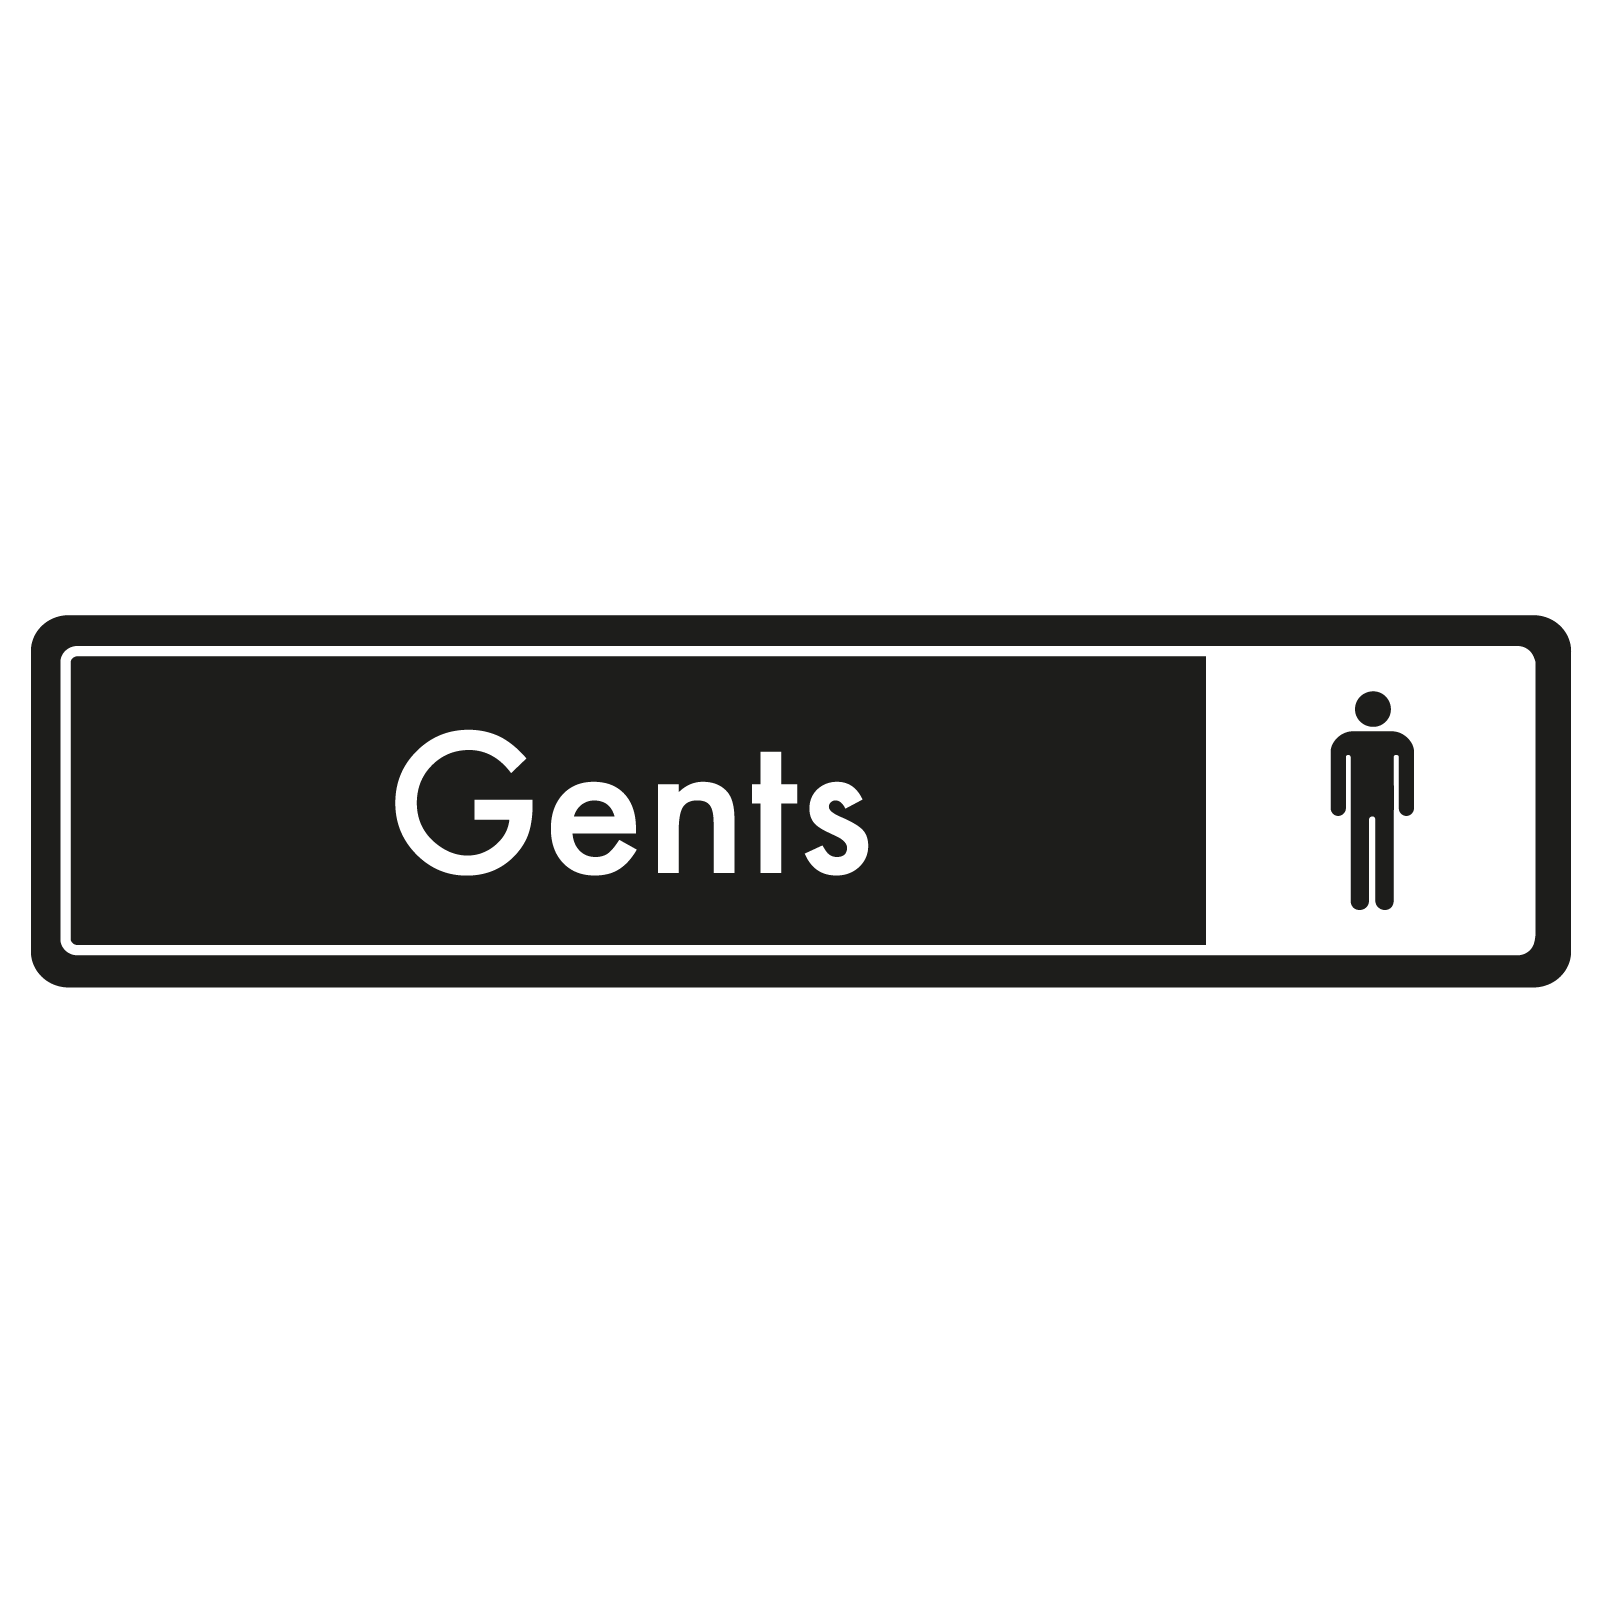 Gents Door Sign - White on Black